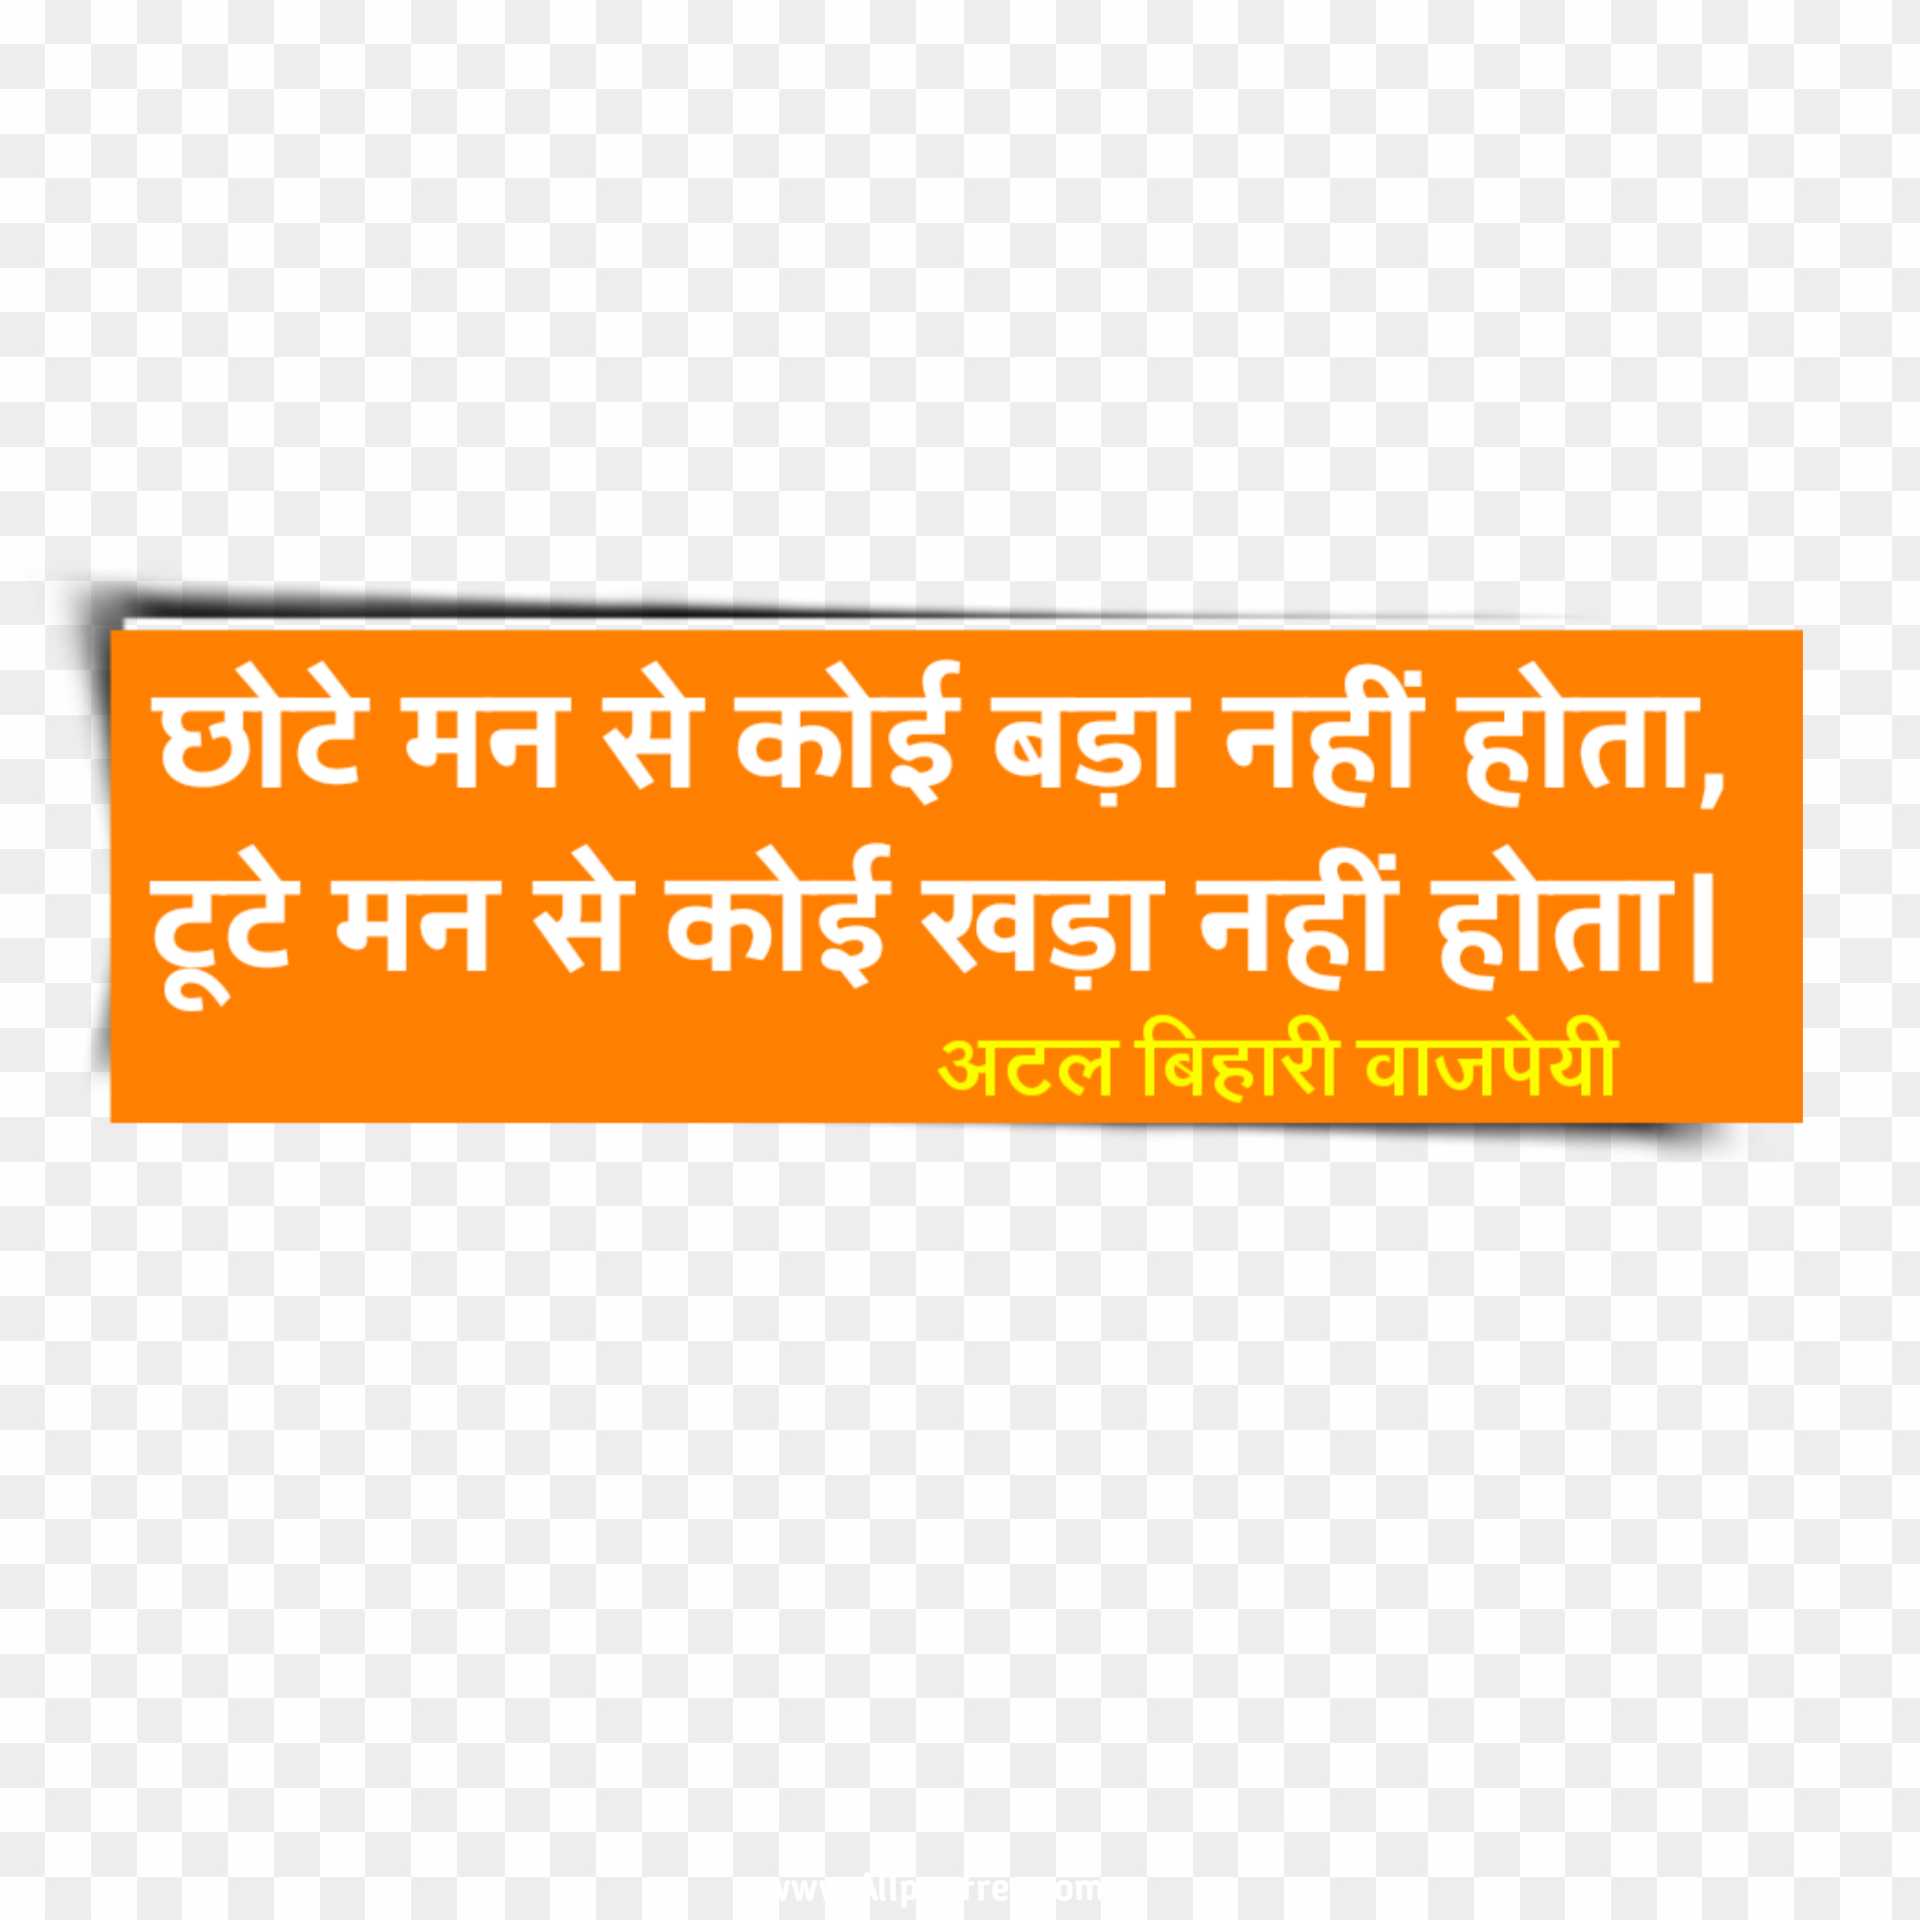 Atal Bihari Vajpayee slogan in Hindi